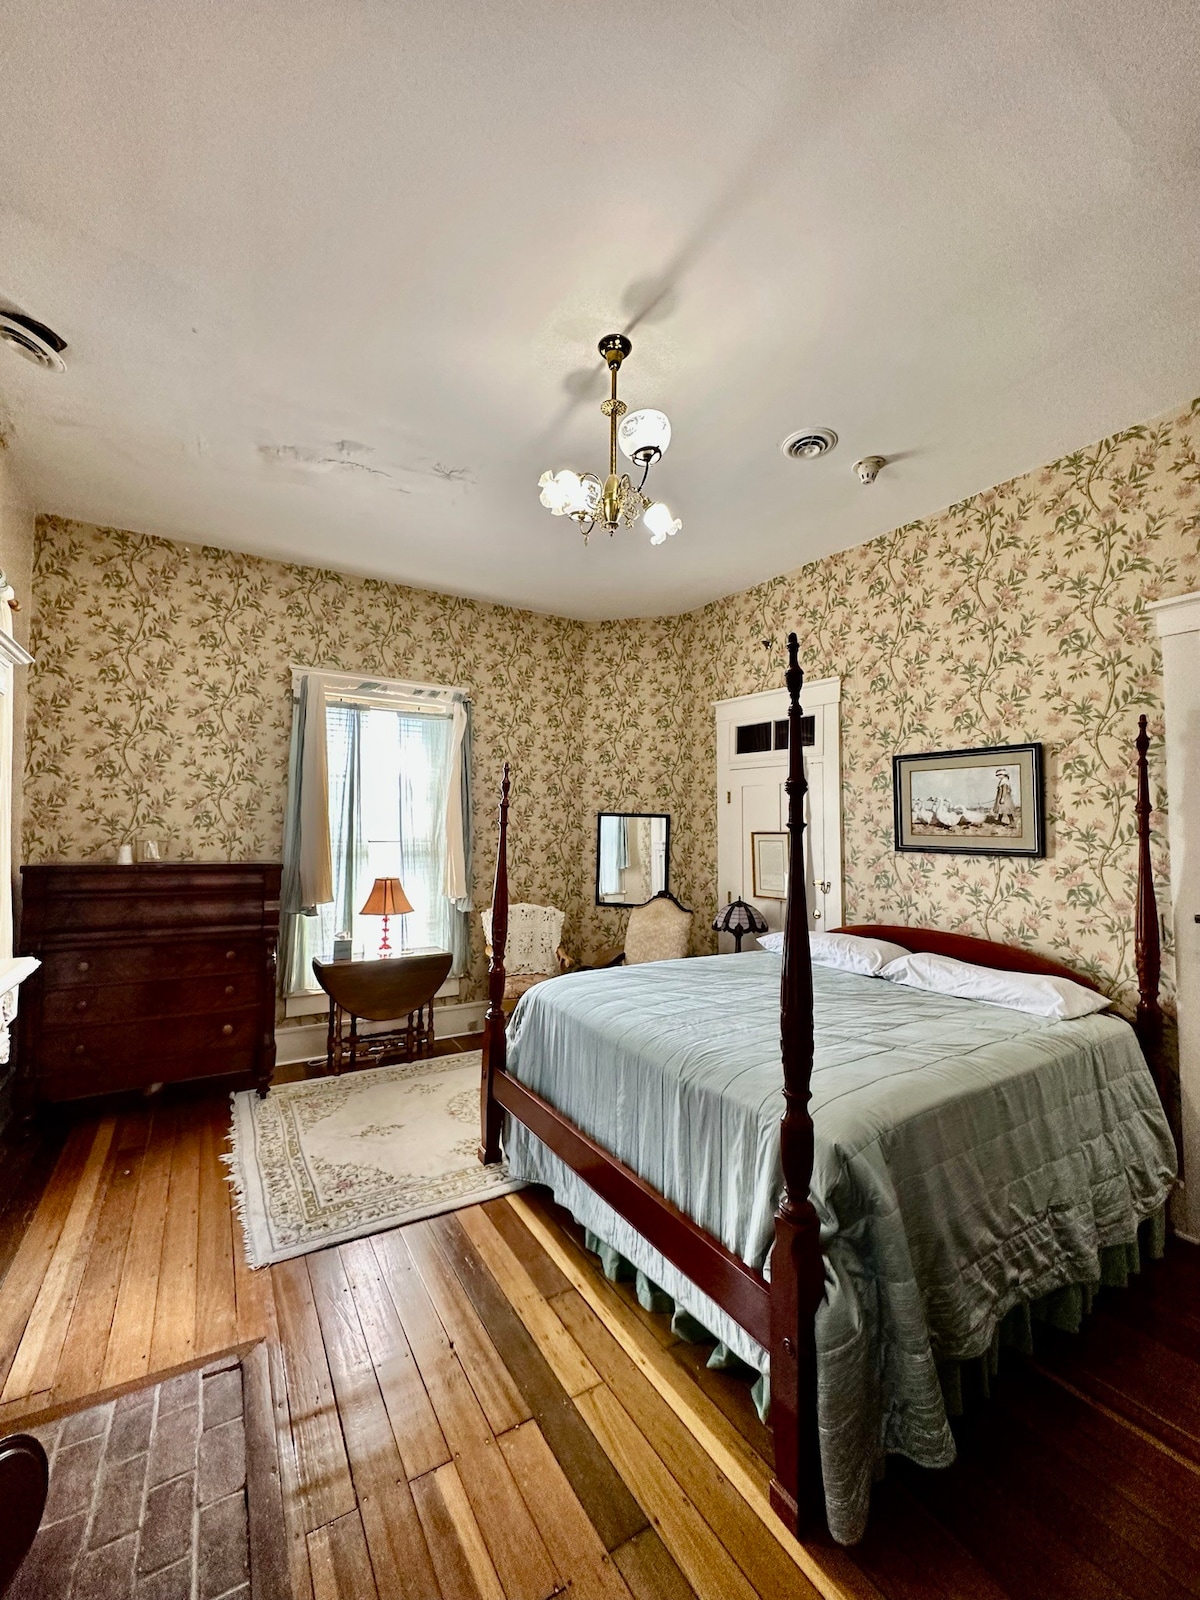 Kintner House Inn - Room 8, Honeymoon Suite